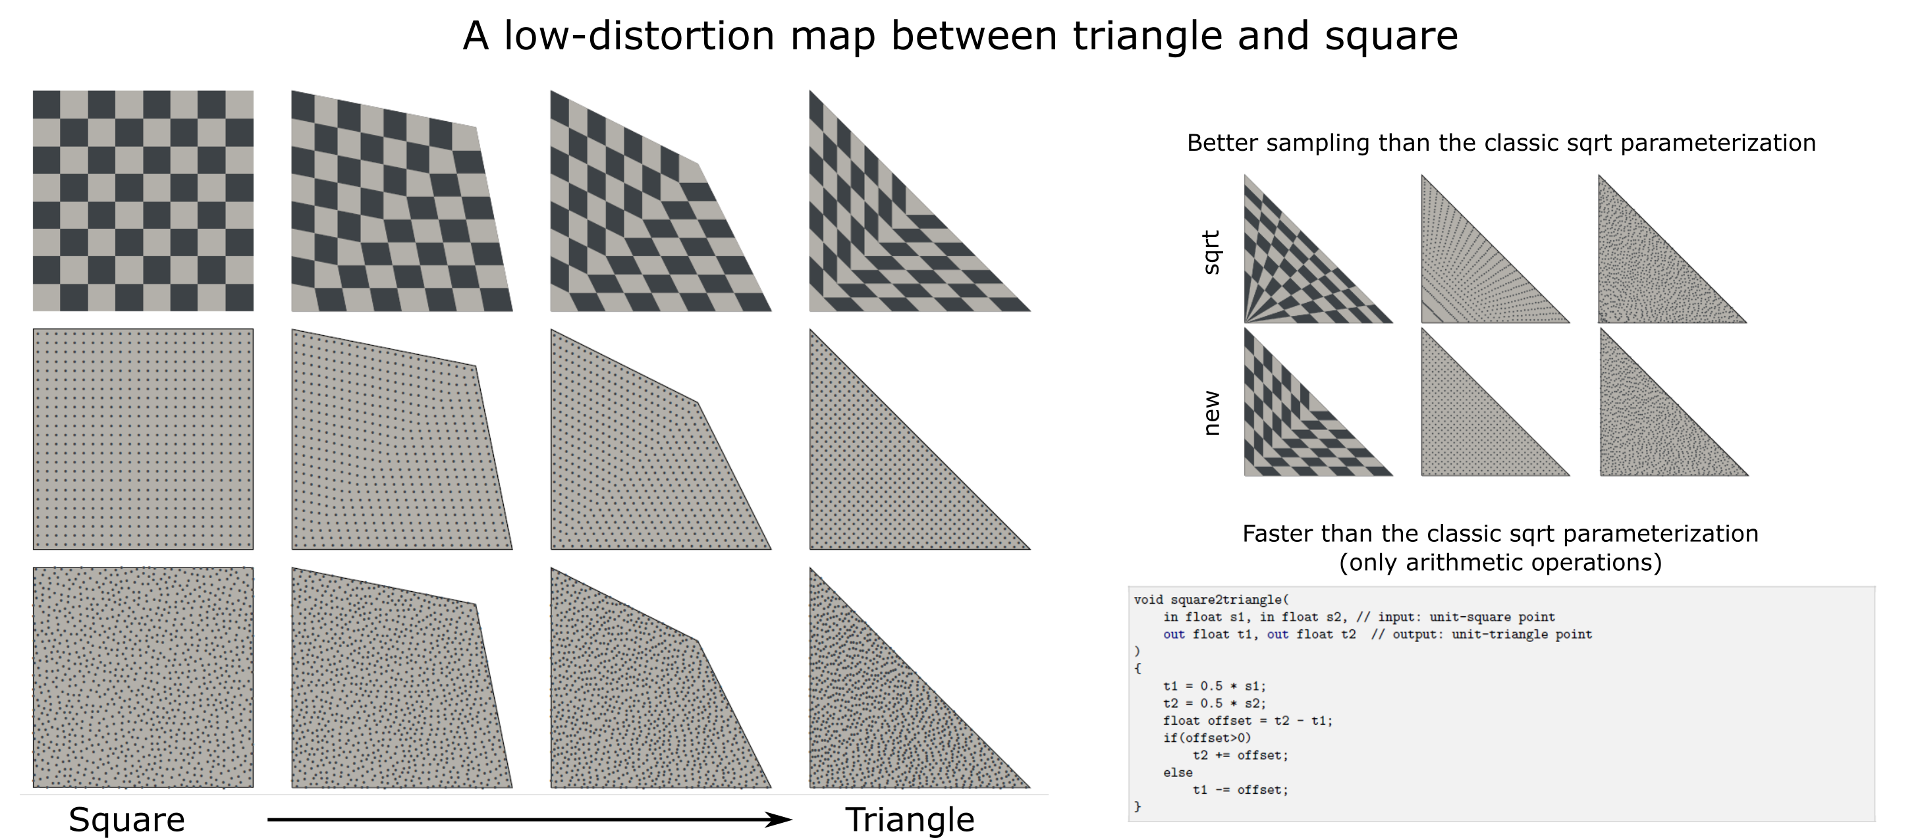 Um mapa de baixa distorção entre triângulo e quadrado